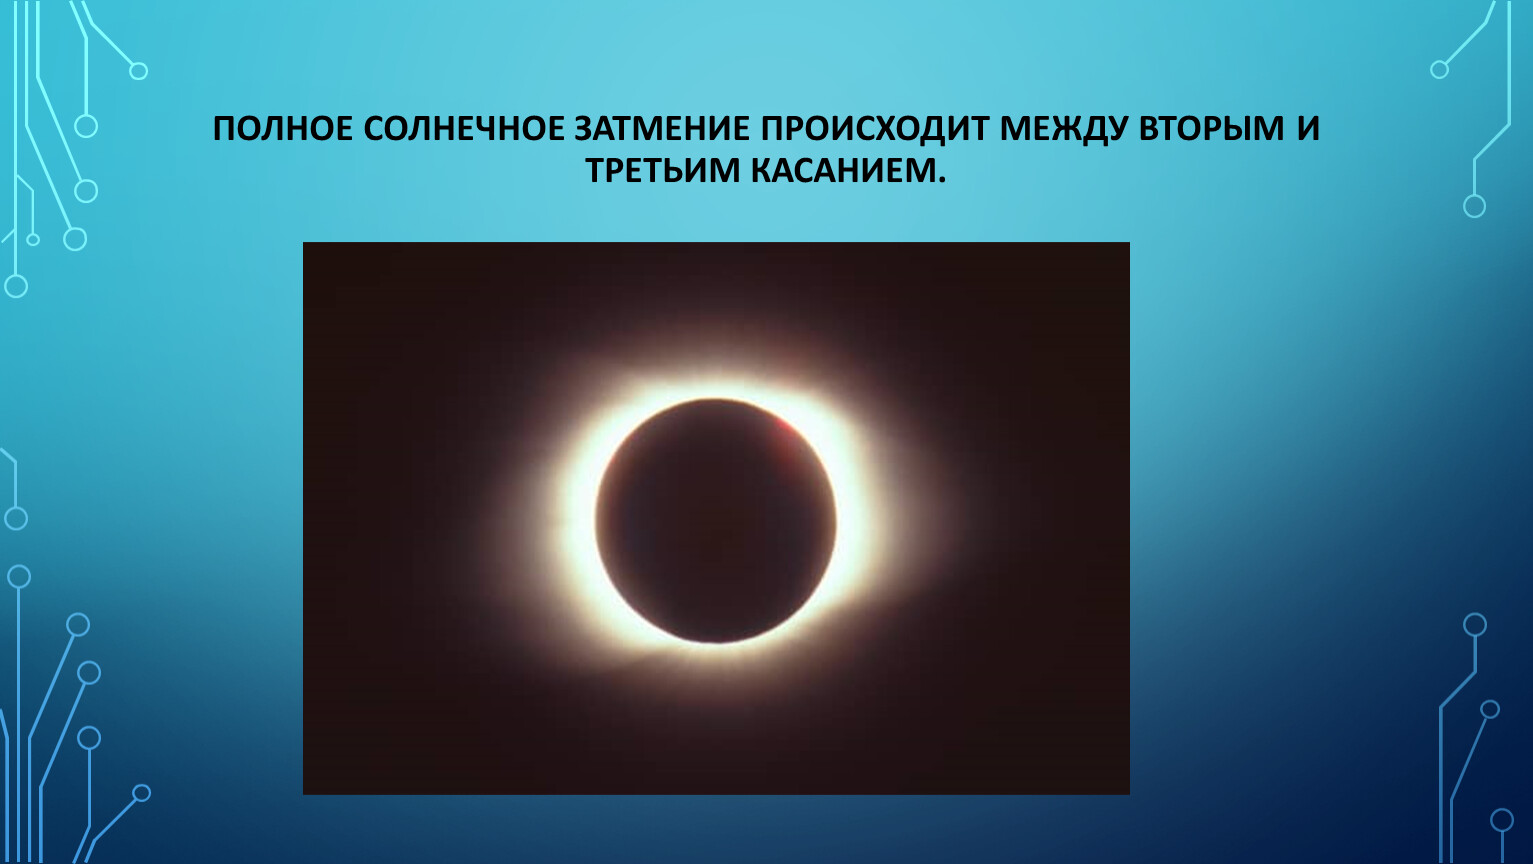 Солнечное затмение бывает раз в. Солнечные затмения и их наблюдения / под ред. а. а. Михайлова.